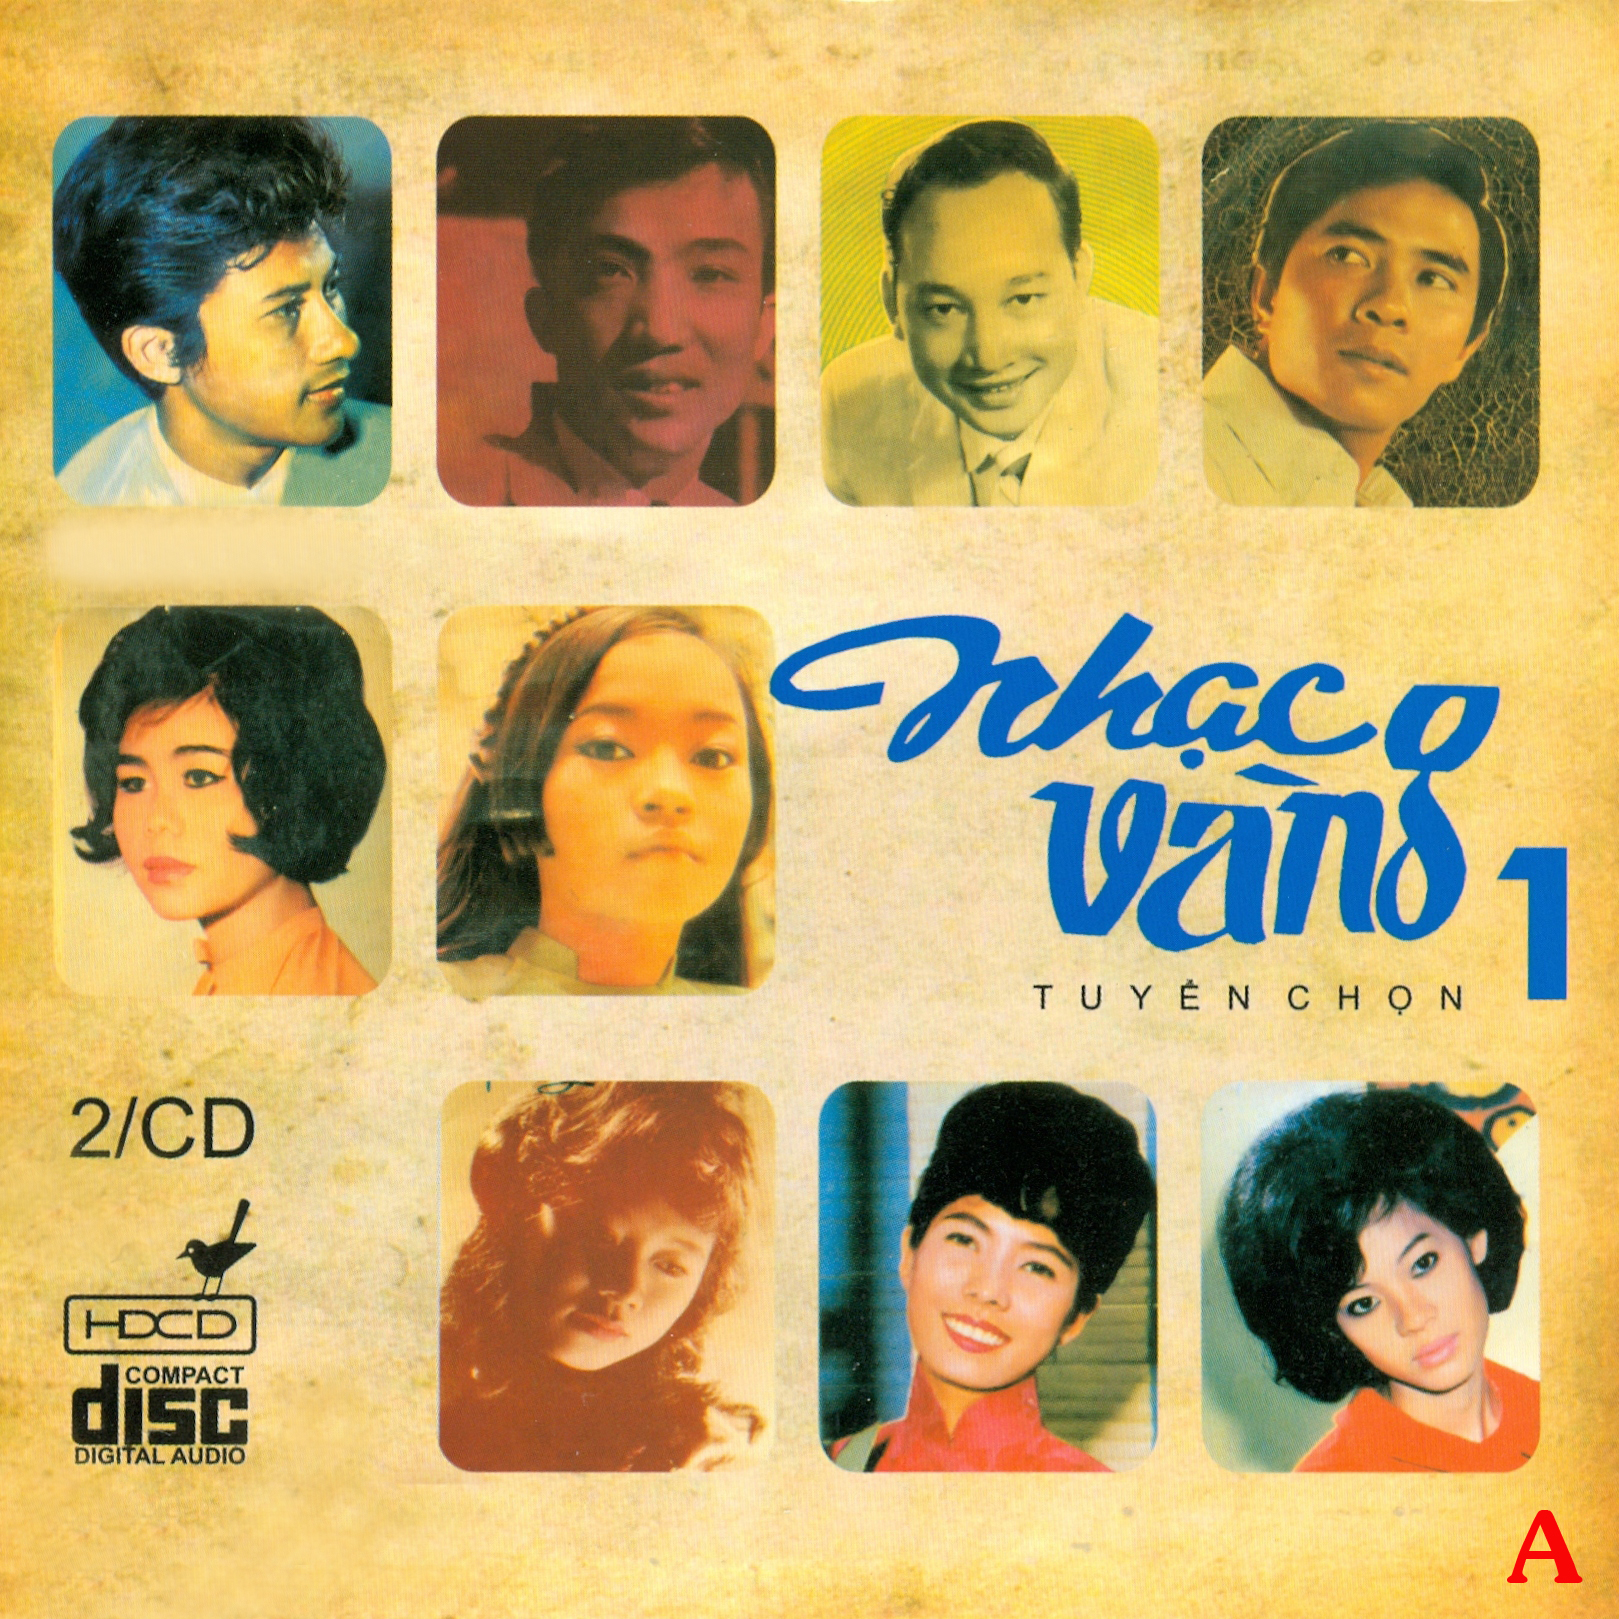 Nhạc vàng tuyển chọn trước 1975 1 – CD 2 – (WAV)